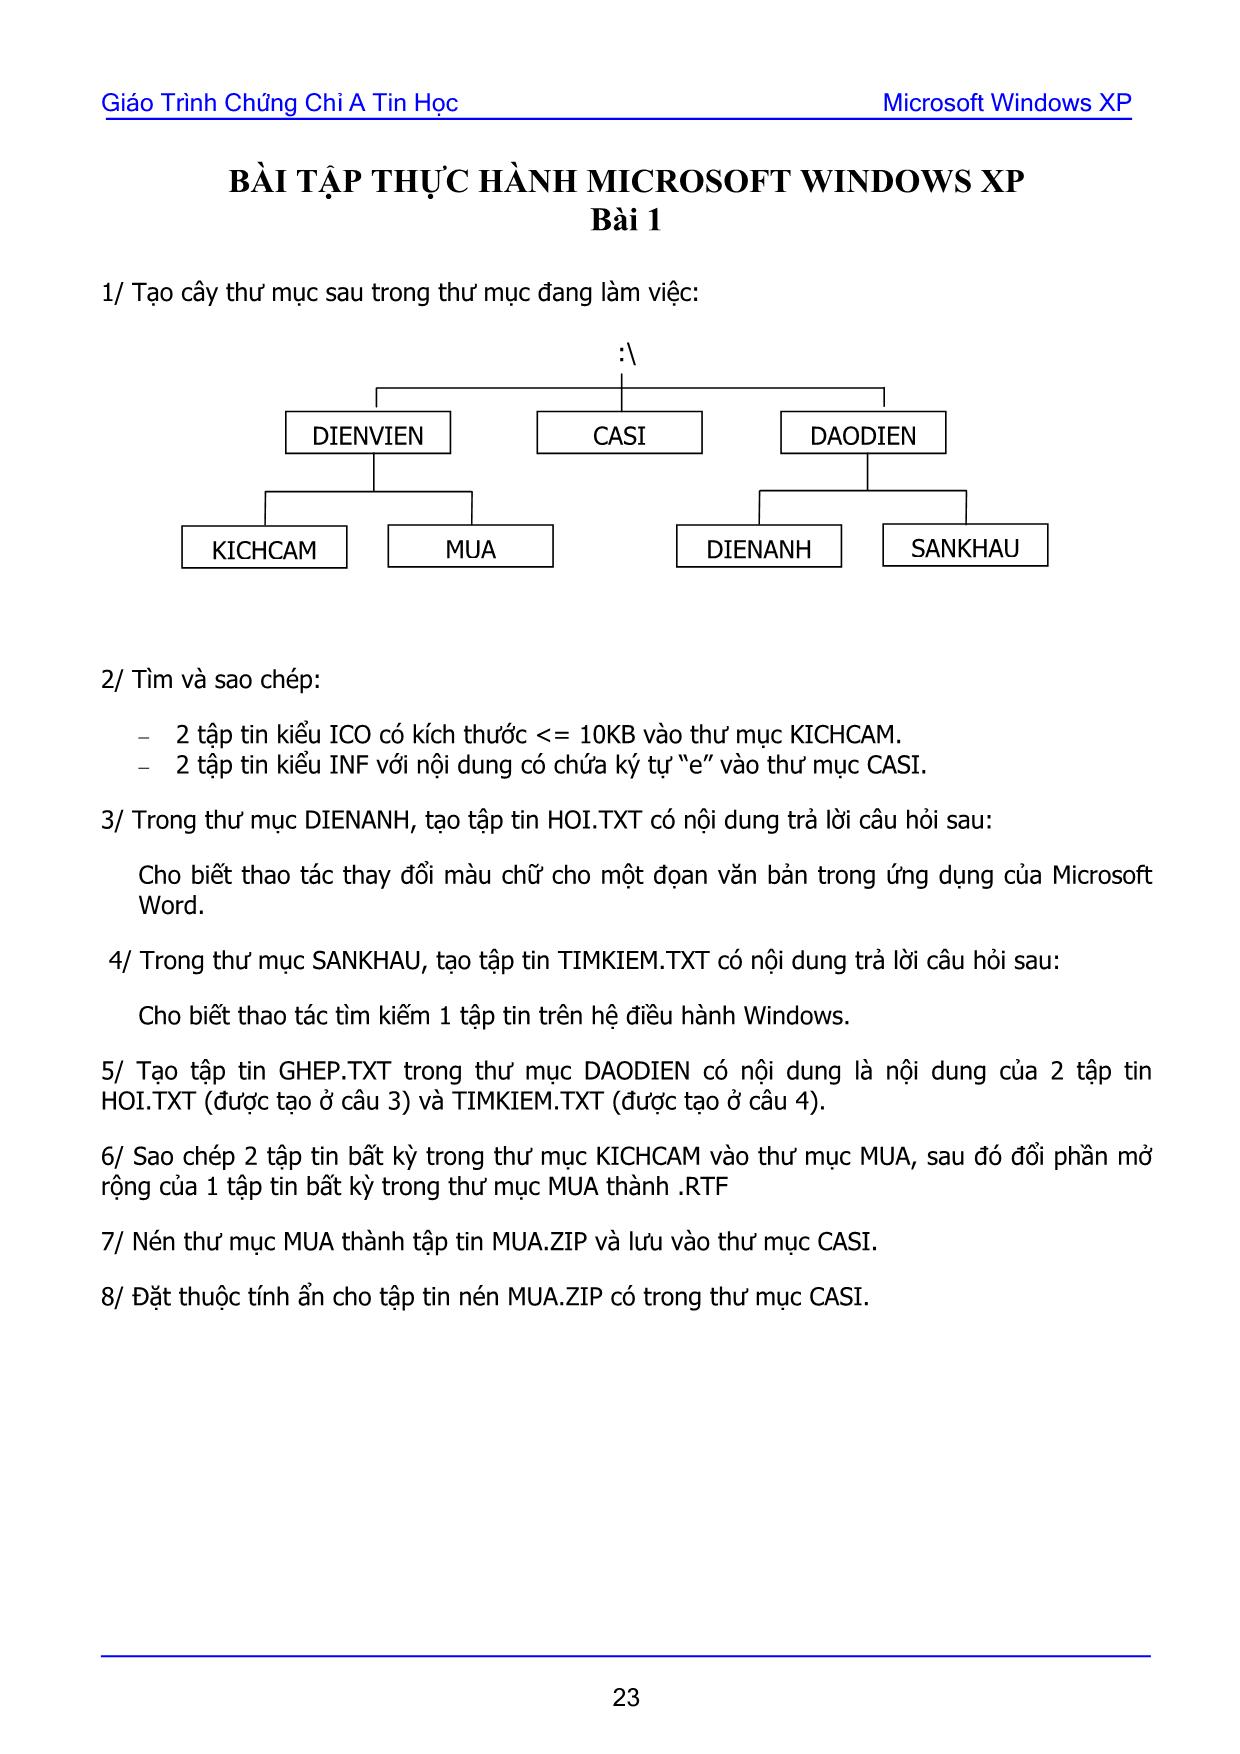 Giáo trình Chứng chỉ A tin học - Bài 1: Bài tập thực hành Microsoft Windows XP trang 1